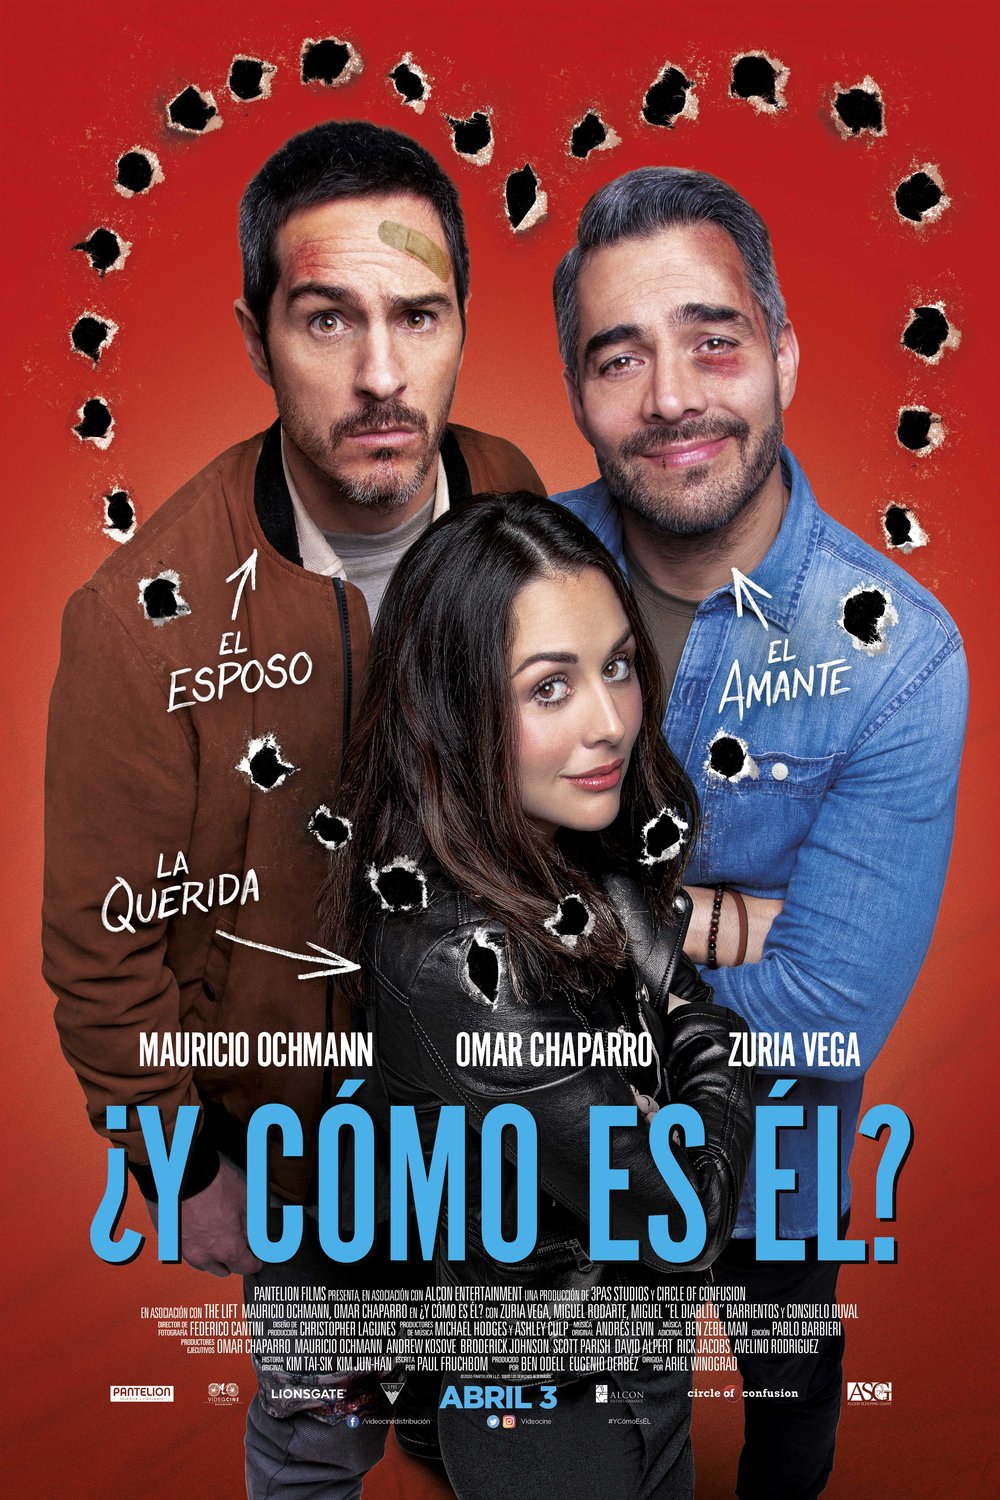 Spanish poster of the movie Y Como Es El?